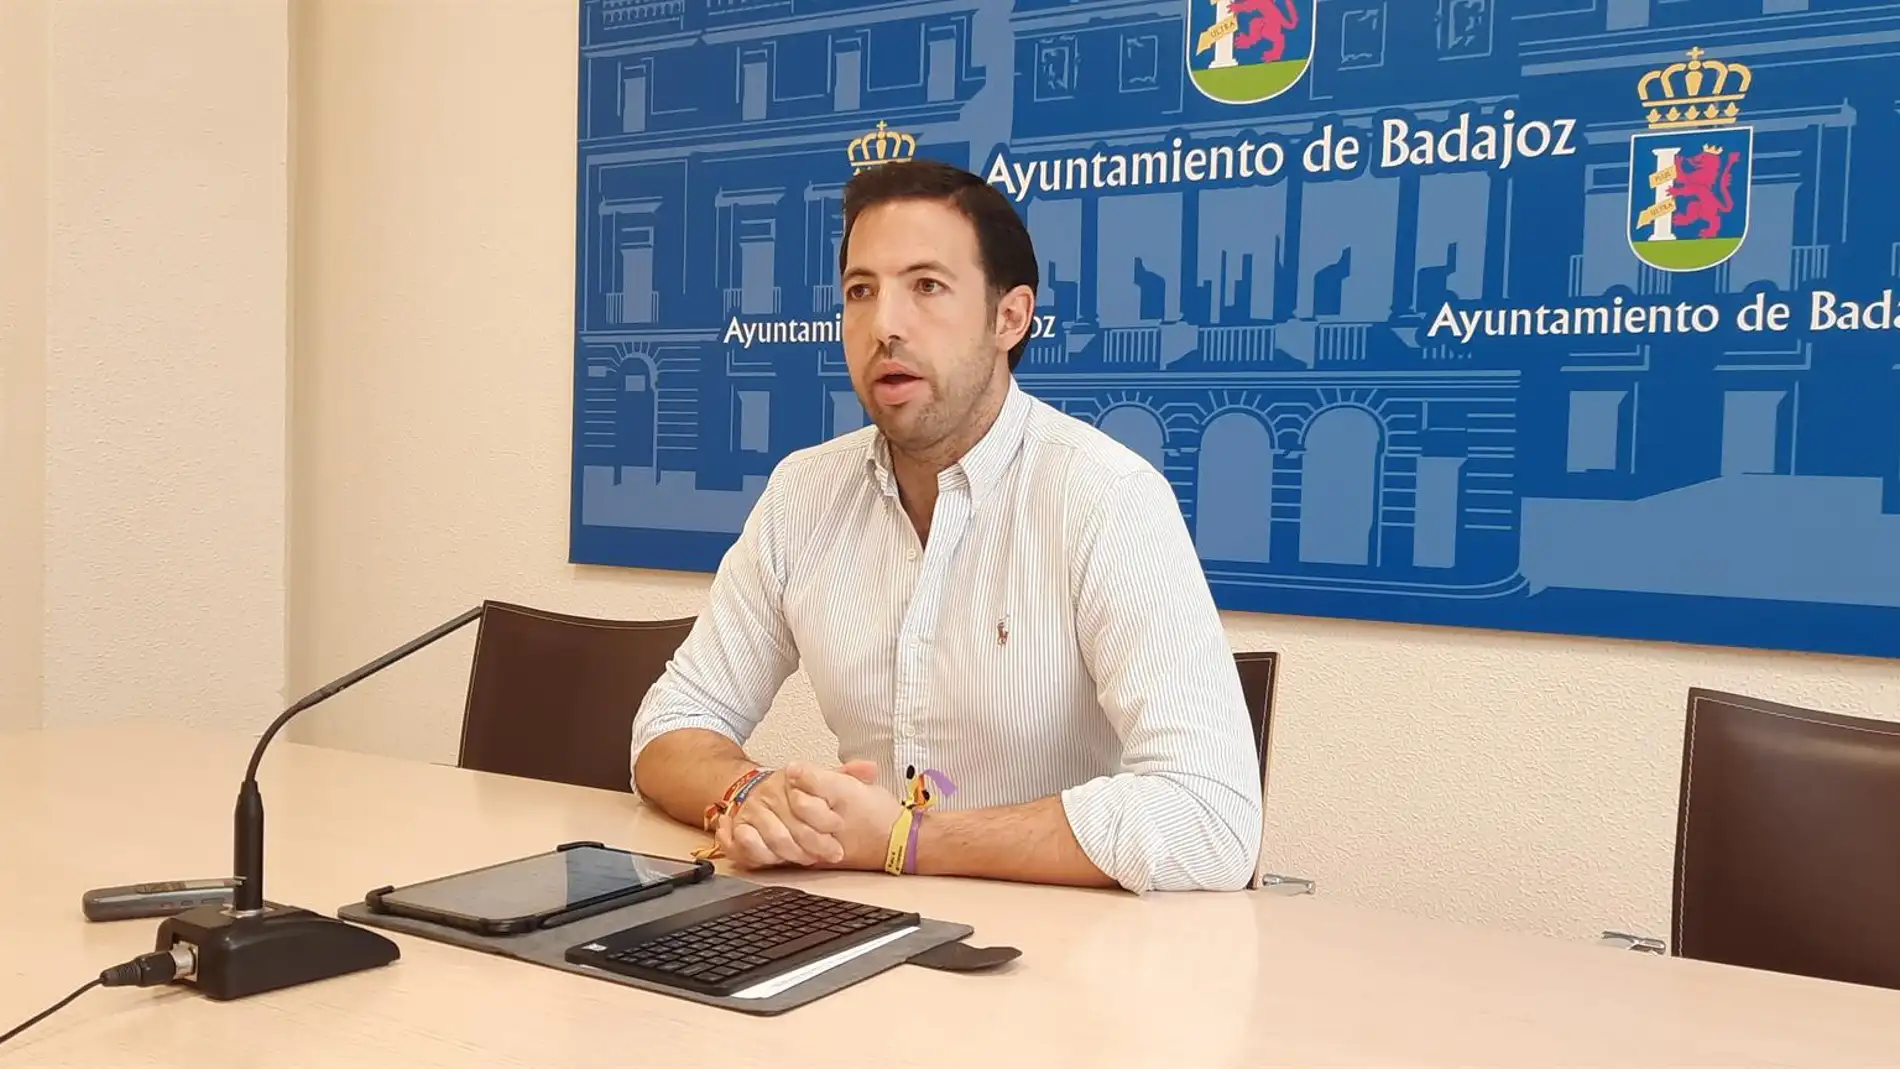 Dimite el Concejal de Juventud del Ayuntamiento de Badajoz tras dar positivo el viernes en un control de Alcoholemia